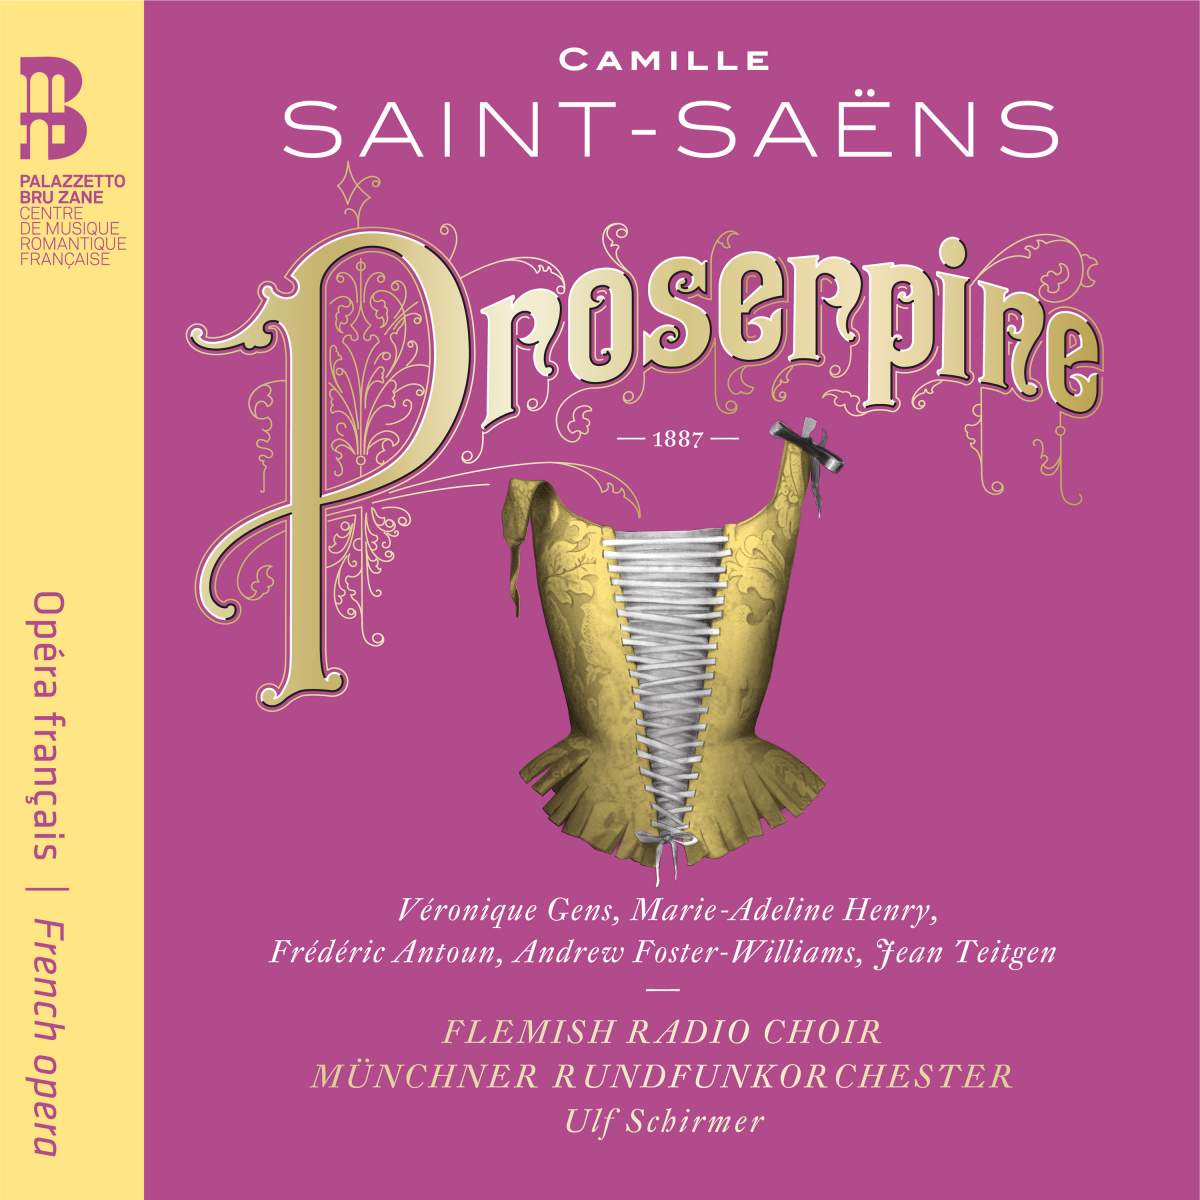 Veronique Gens, Marie-Adeline Henry, Frederic Antoun - Saint-Saens: Proserpine (2017) [Qobuz FLAC 24bit/48kHz]